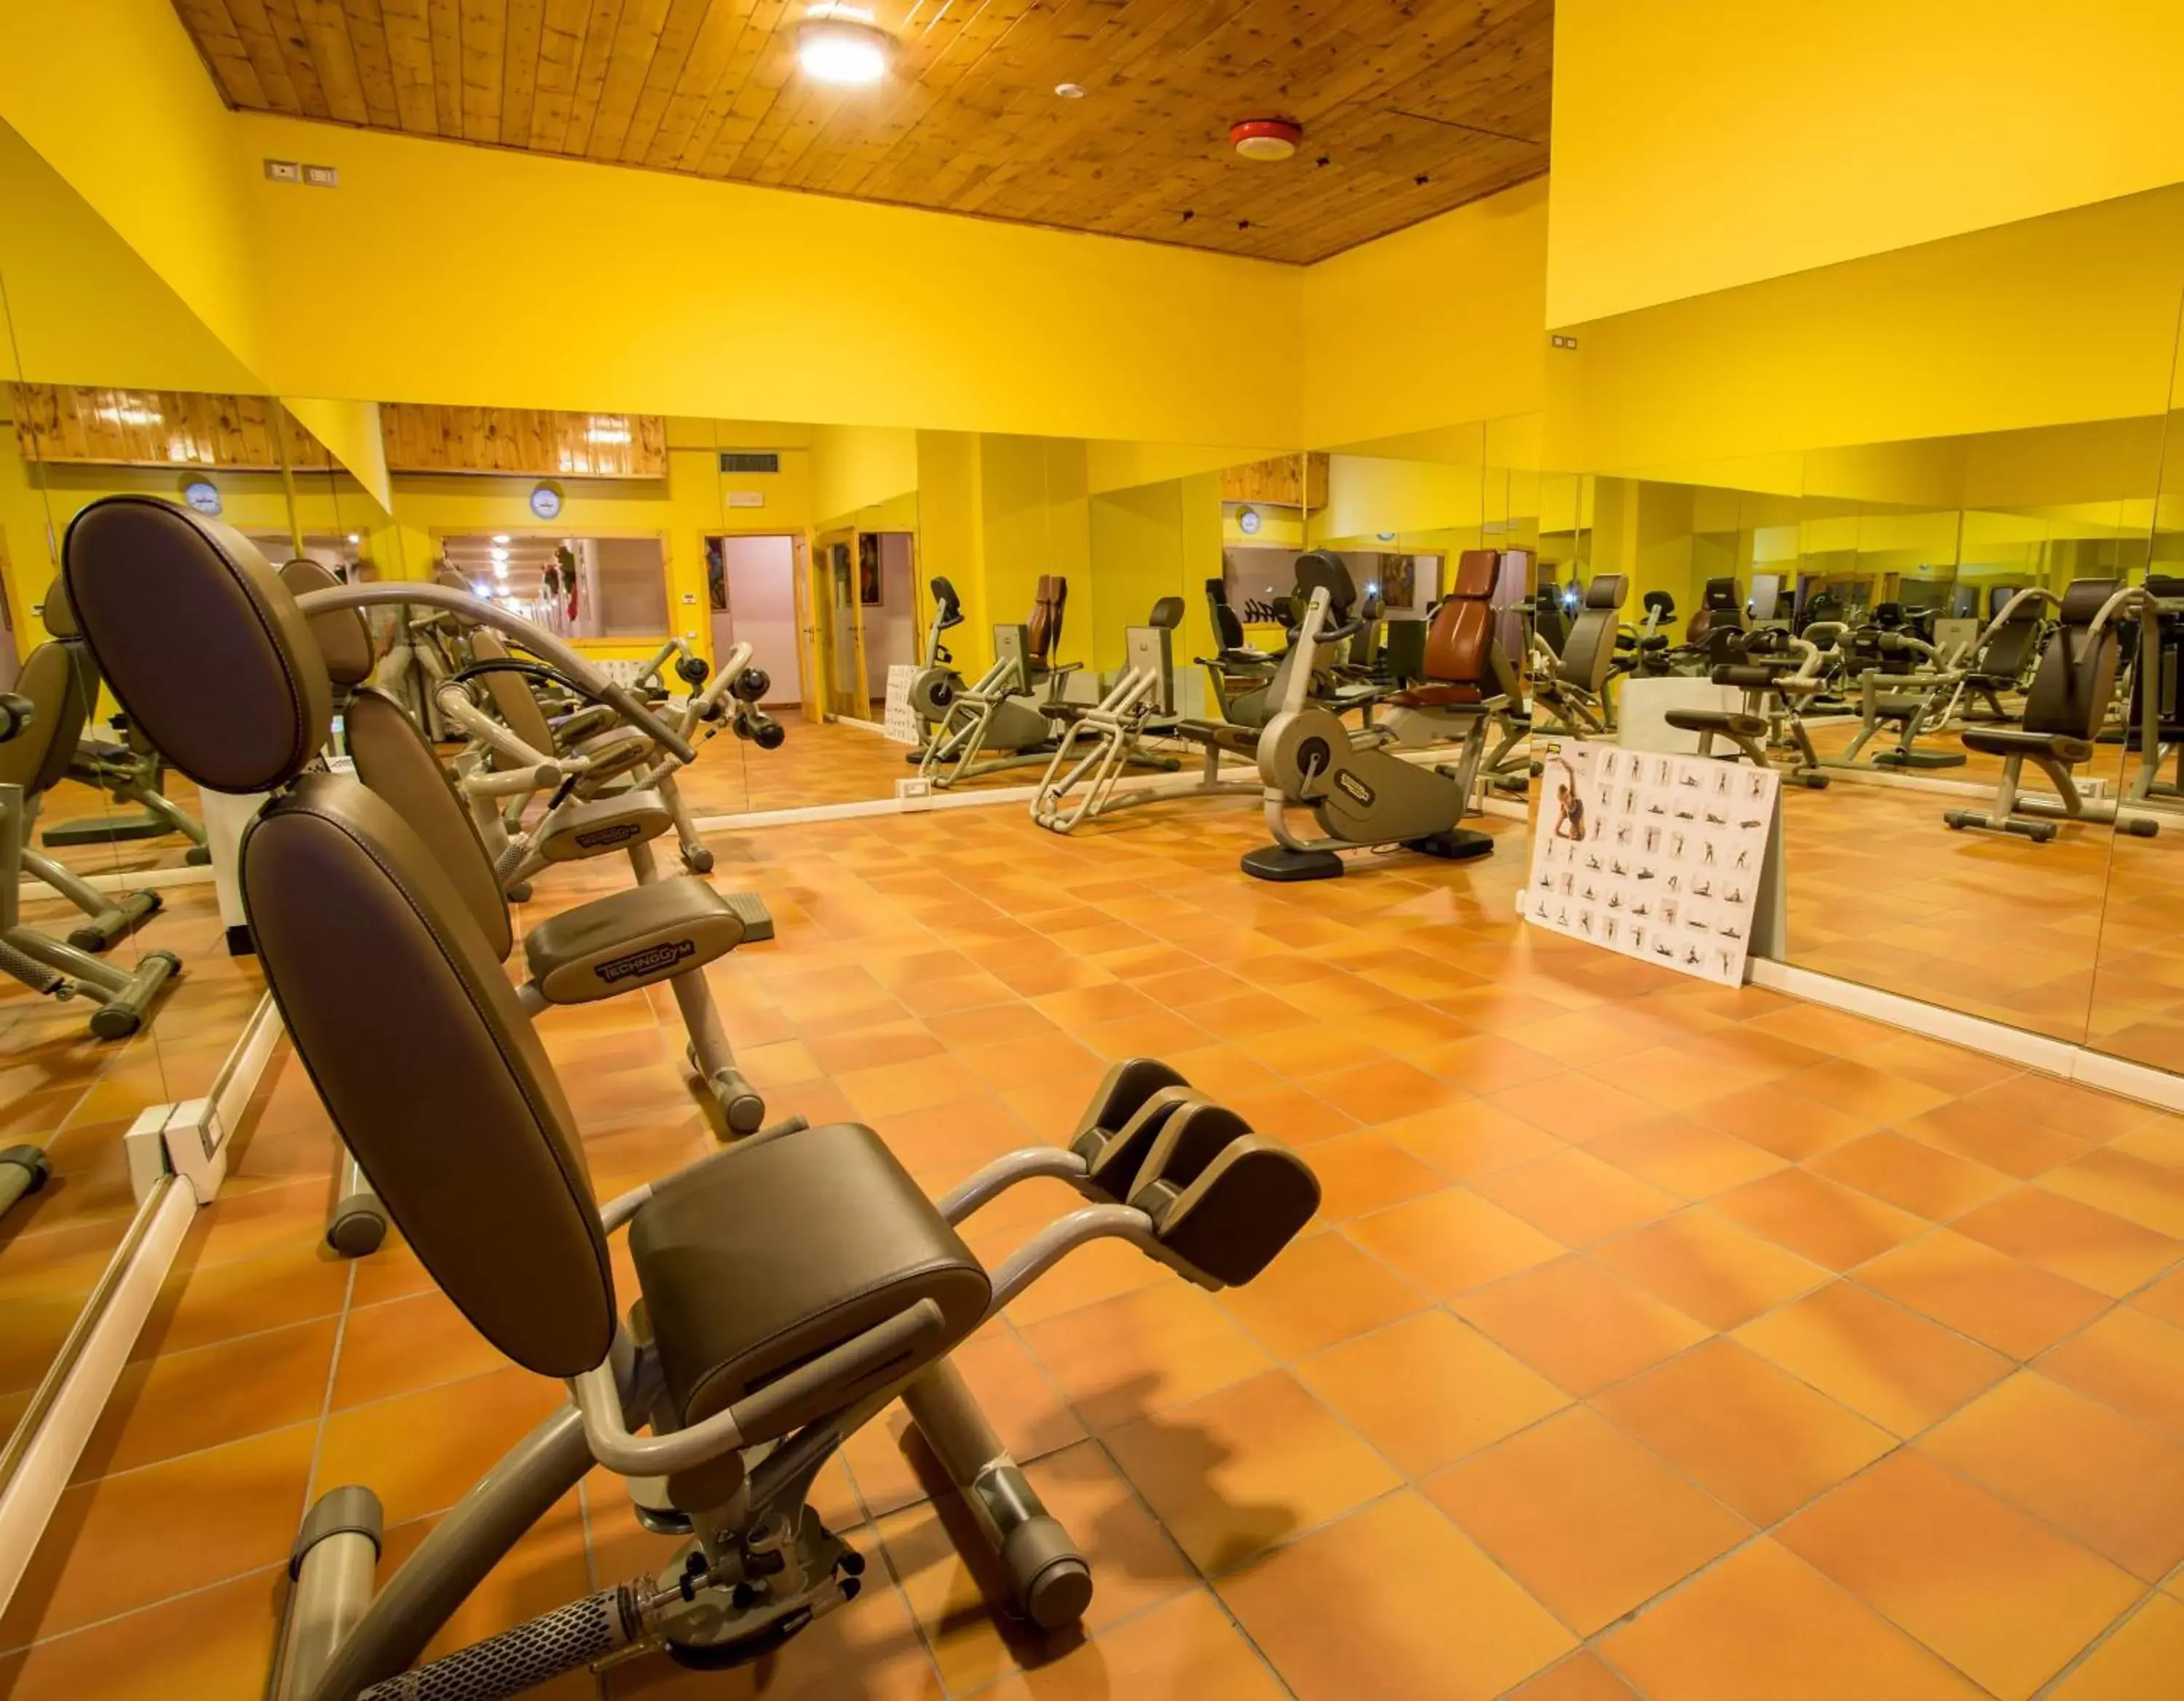 Fitness centre/facilities, Fitness Center/Facilities in Hotel Villaggio Nevada